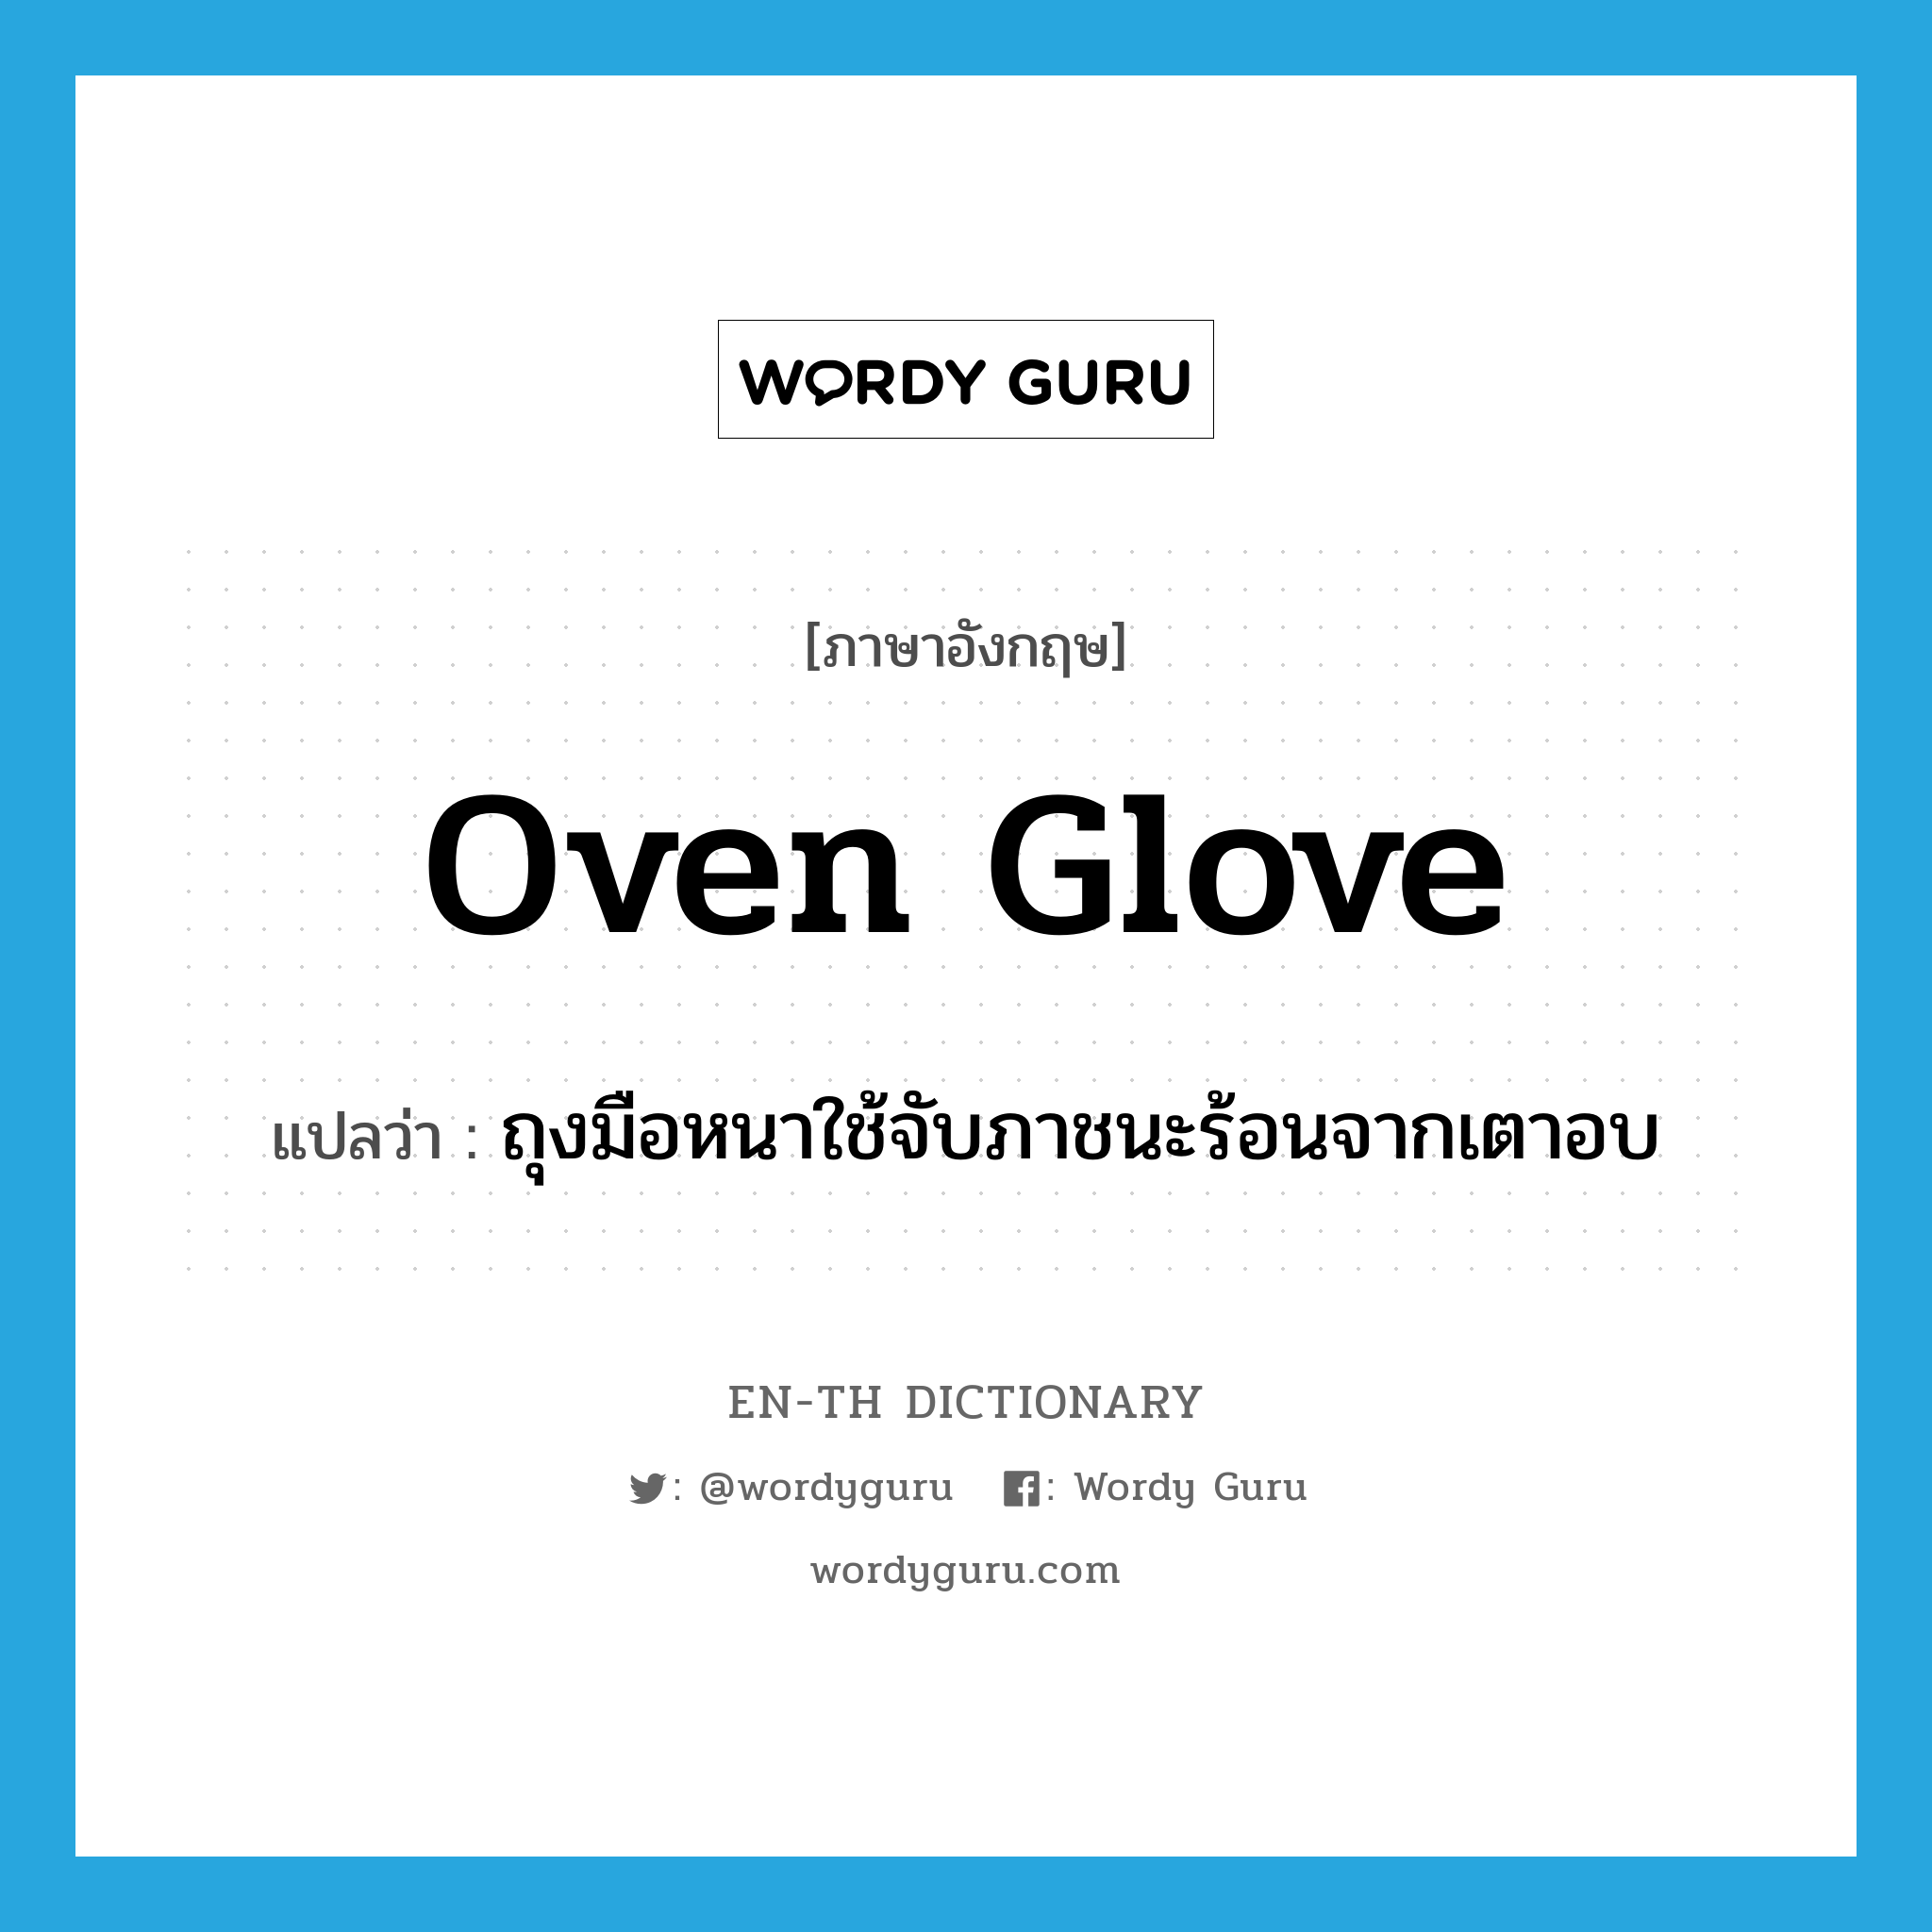 oven glove แปลว่า?, คำศัพท์ภาษาอังกฤษ oven glove แปลว่า ถุงมือหนาใช้จับภาชนะร้อนจากเตาอบ ประเภท N หมวด N